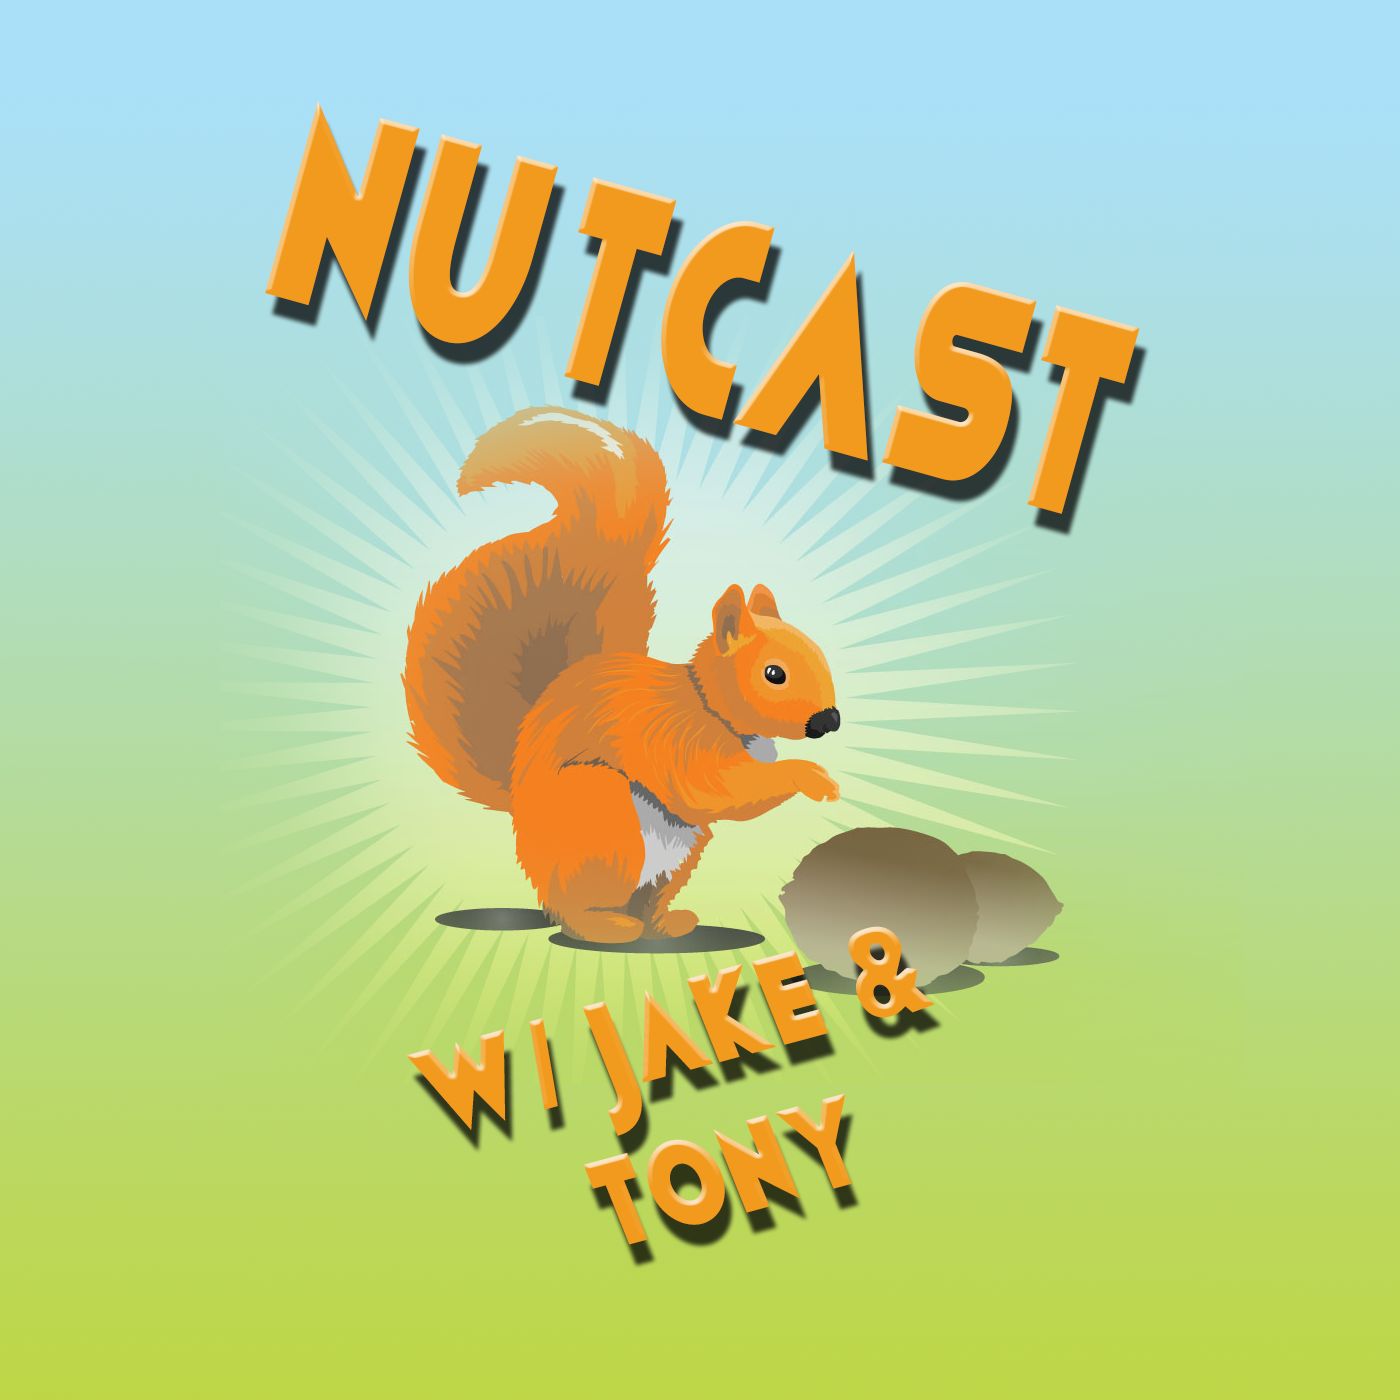 NutCast w/ Jake & Tony